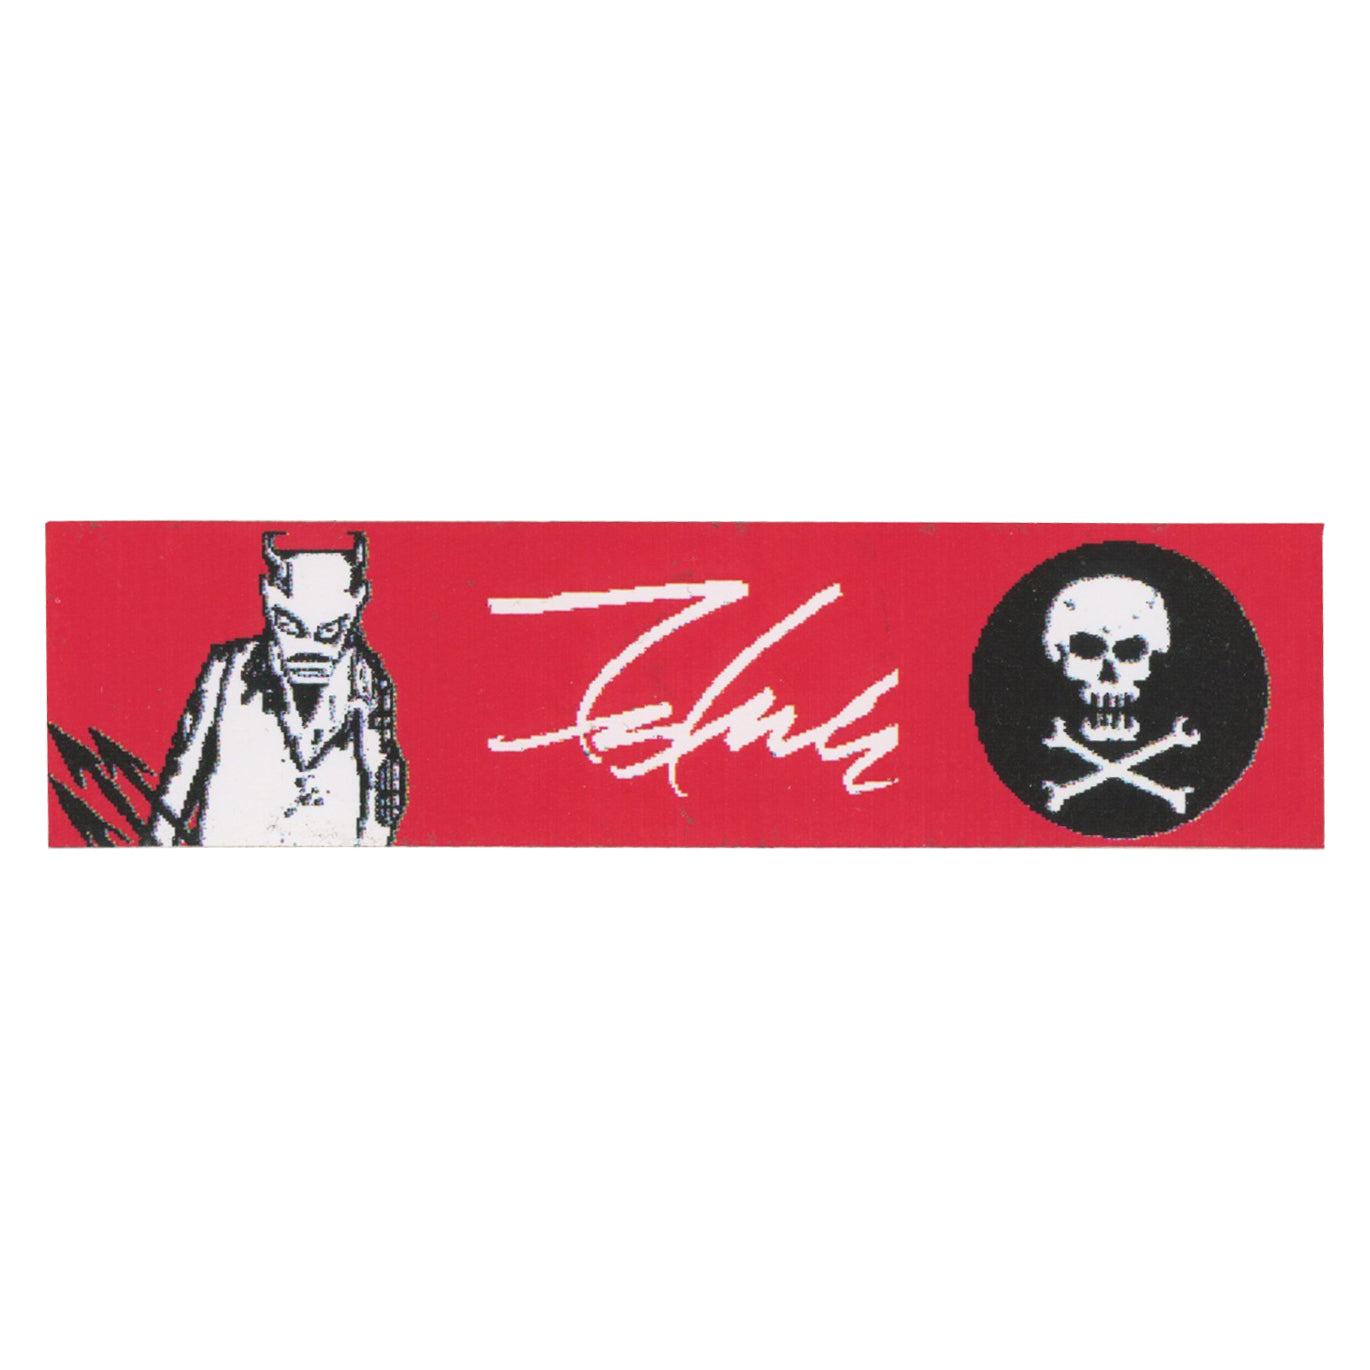 Futura 2000 Devil and Skull Sticker with Signature